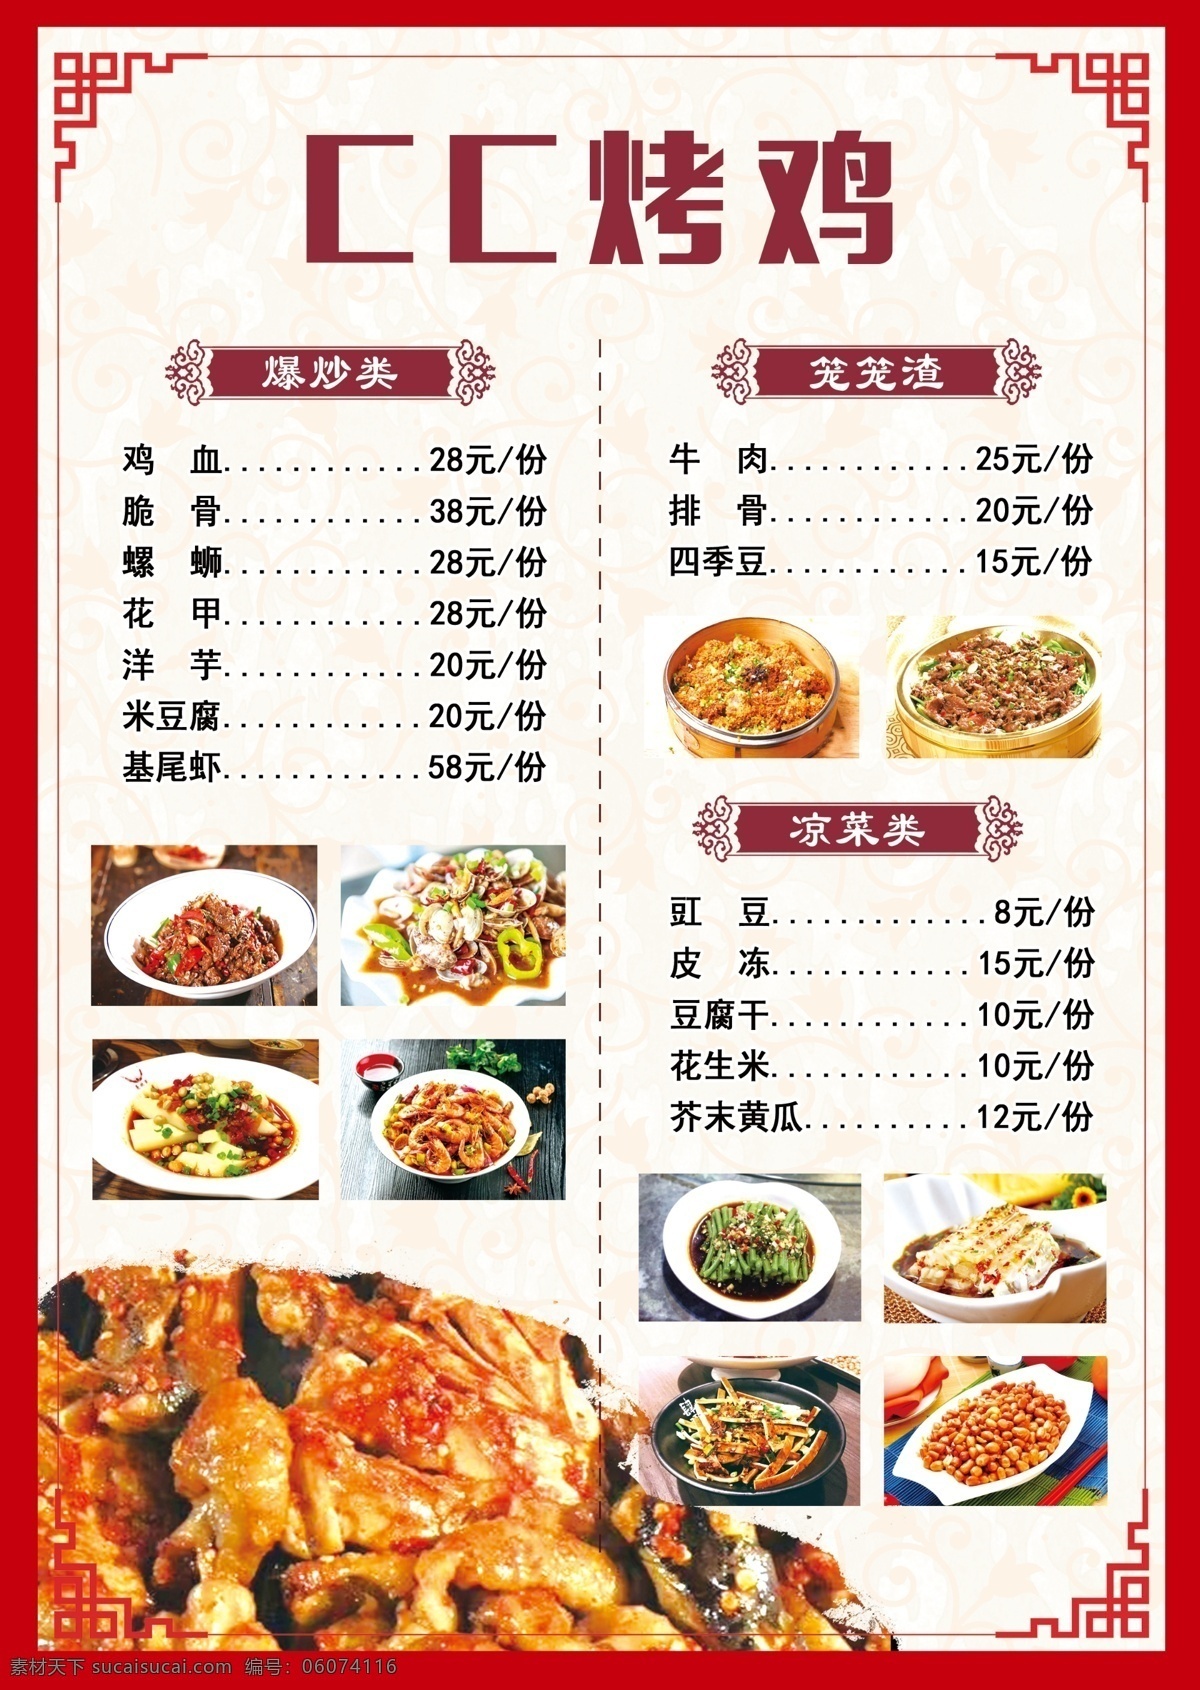 烤鸡菜单 餐饮菜单 菜单烤鸡 炒菜 火锅 菜单 菜单菜谱